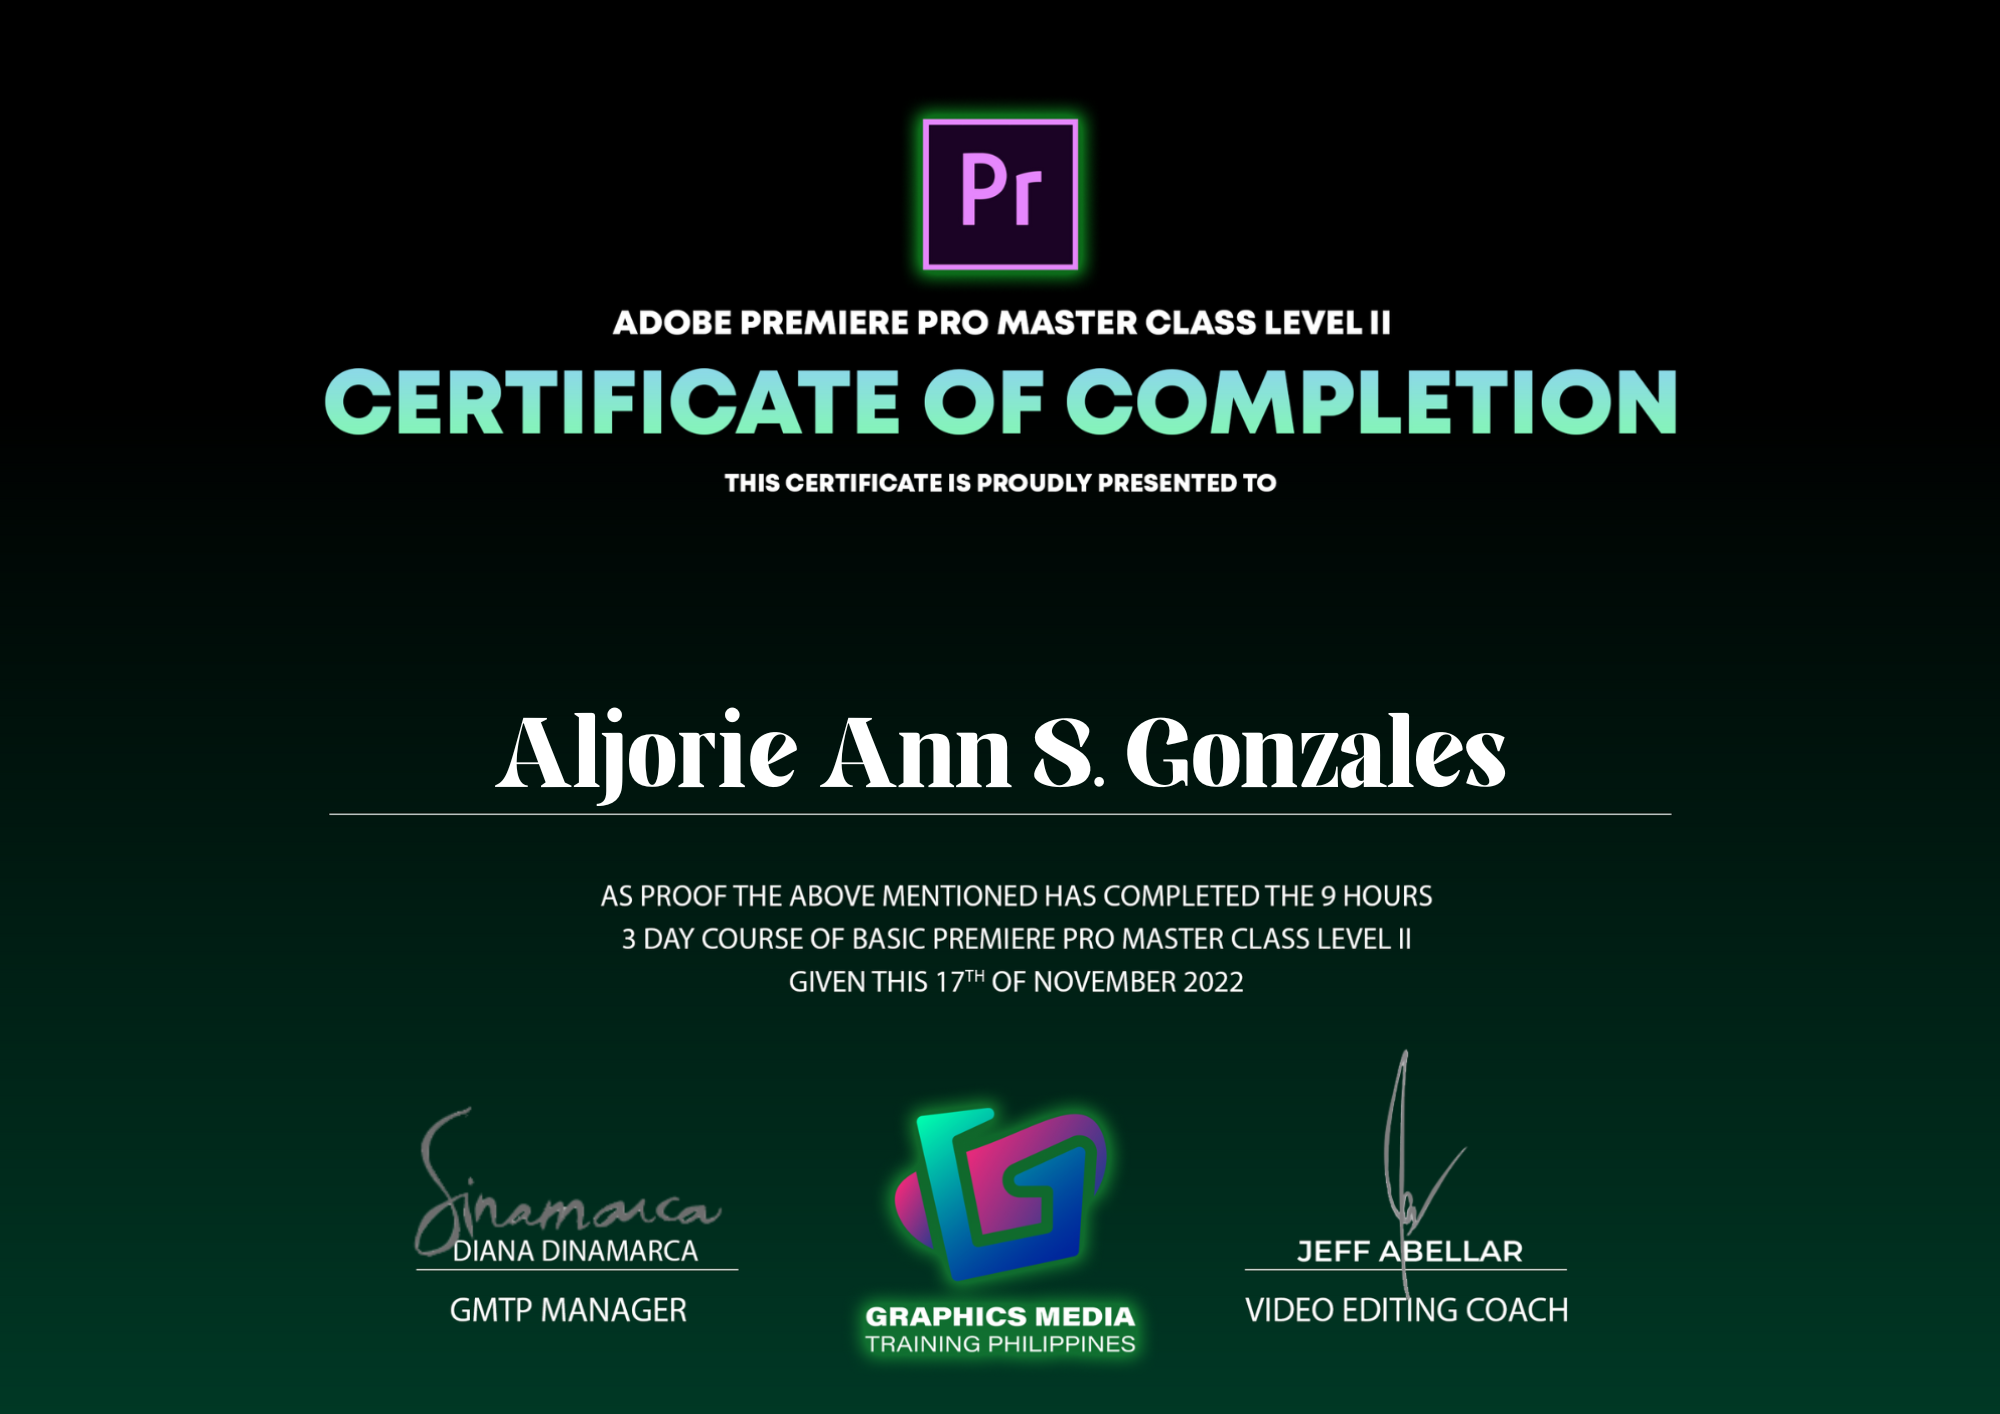 Adobe Premiere Pro Master Class Level II